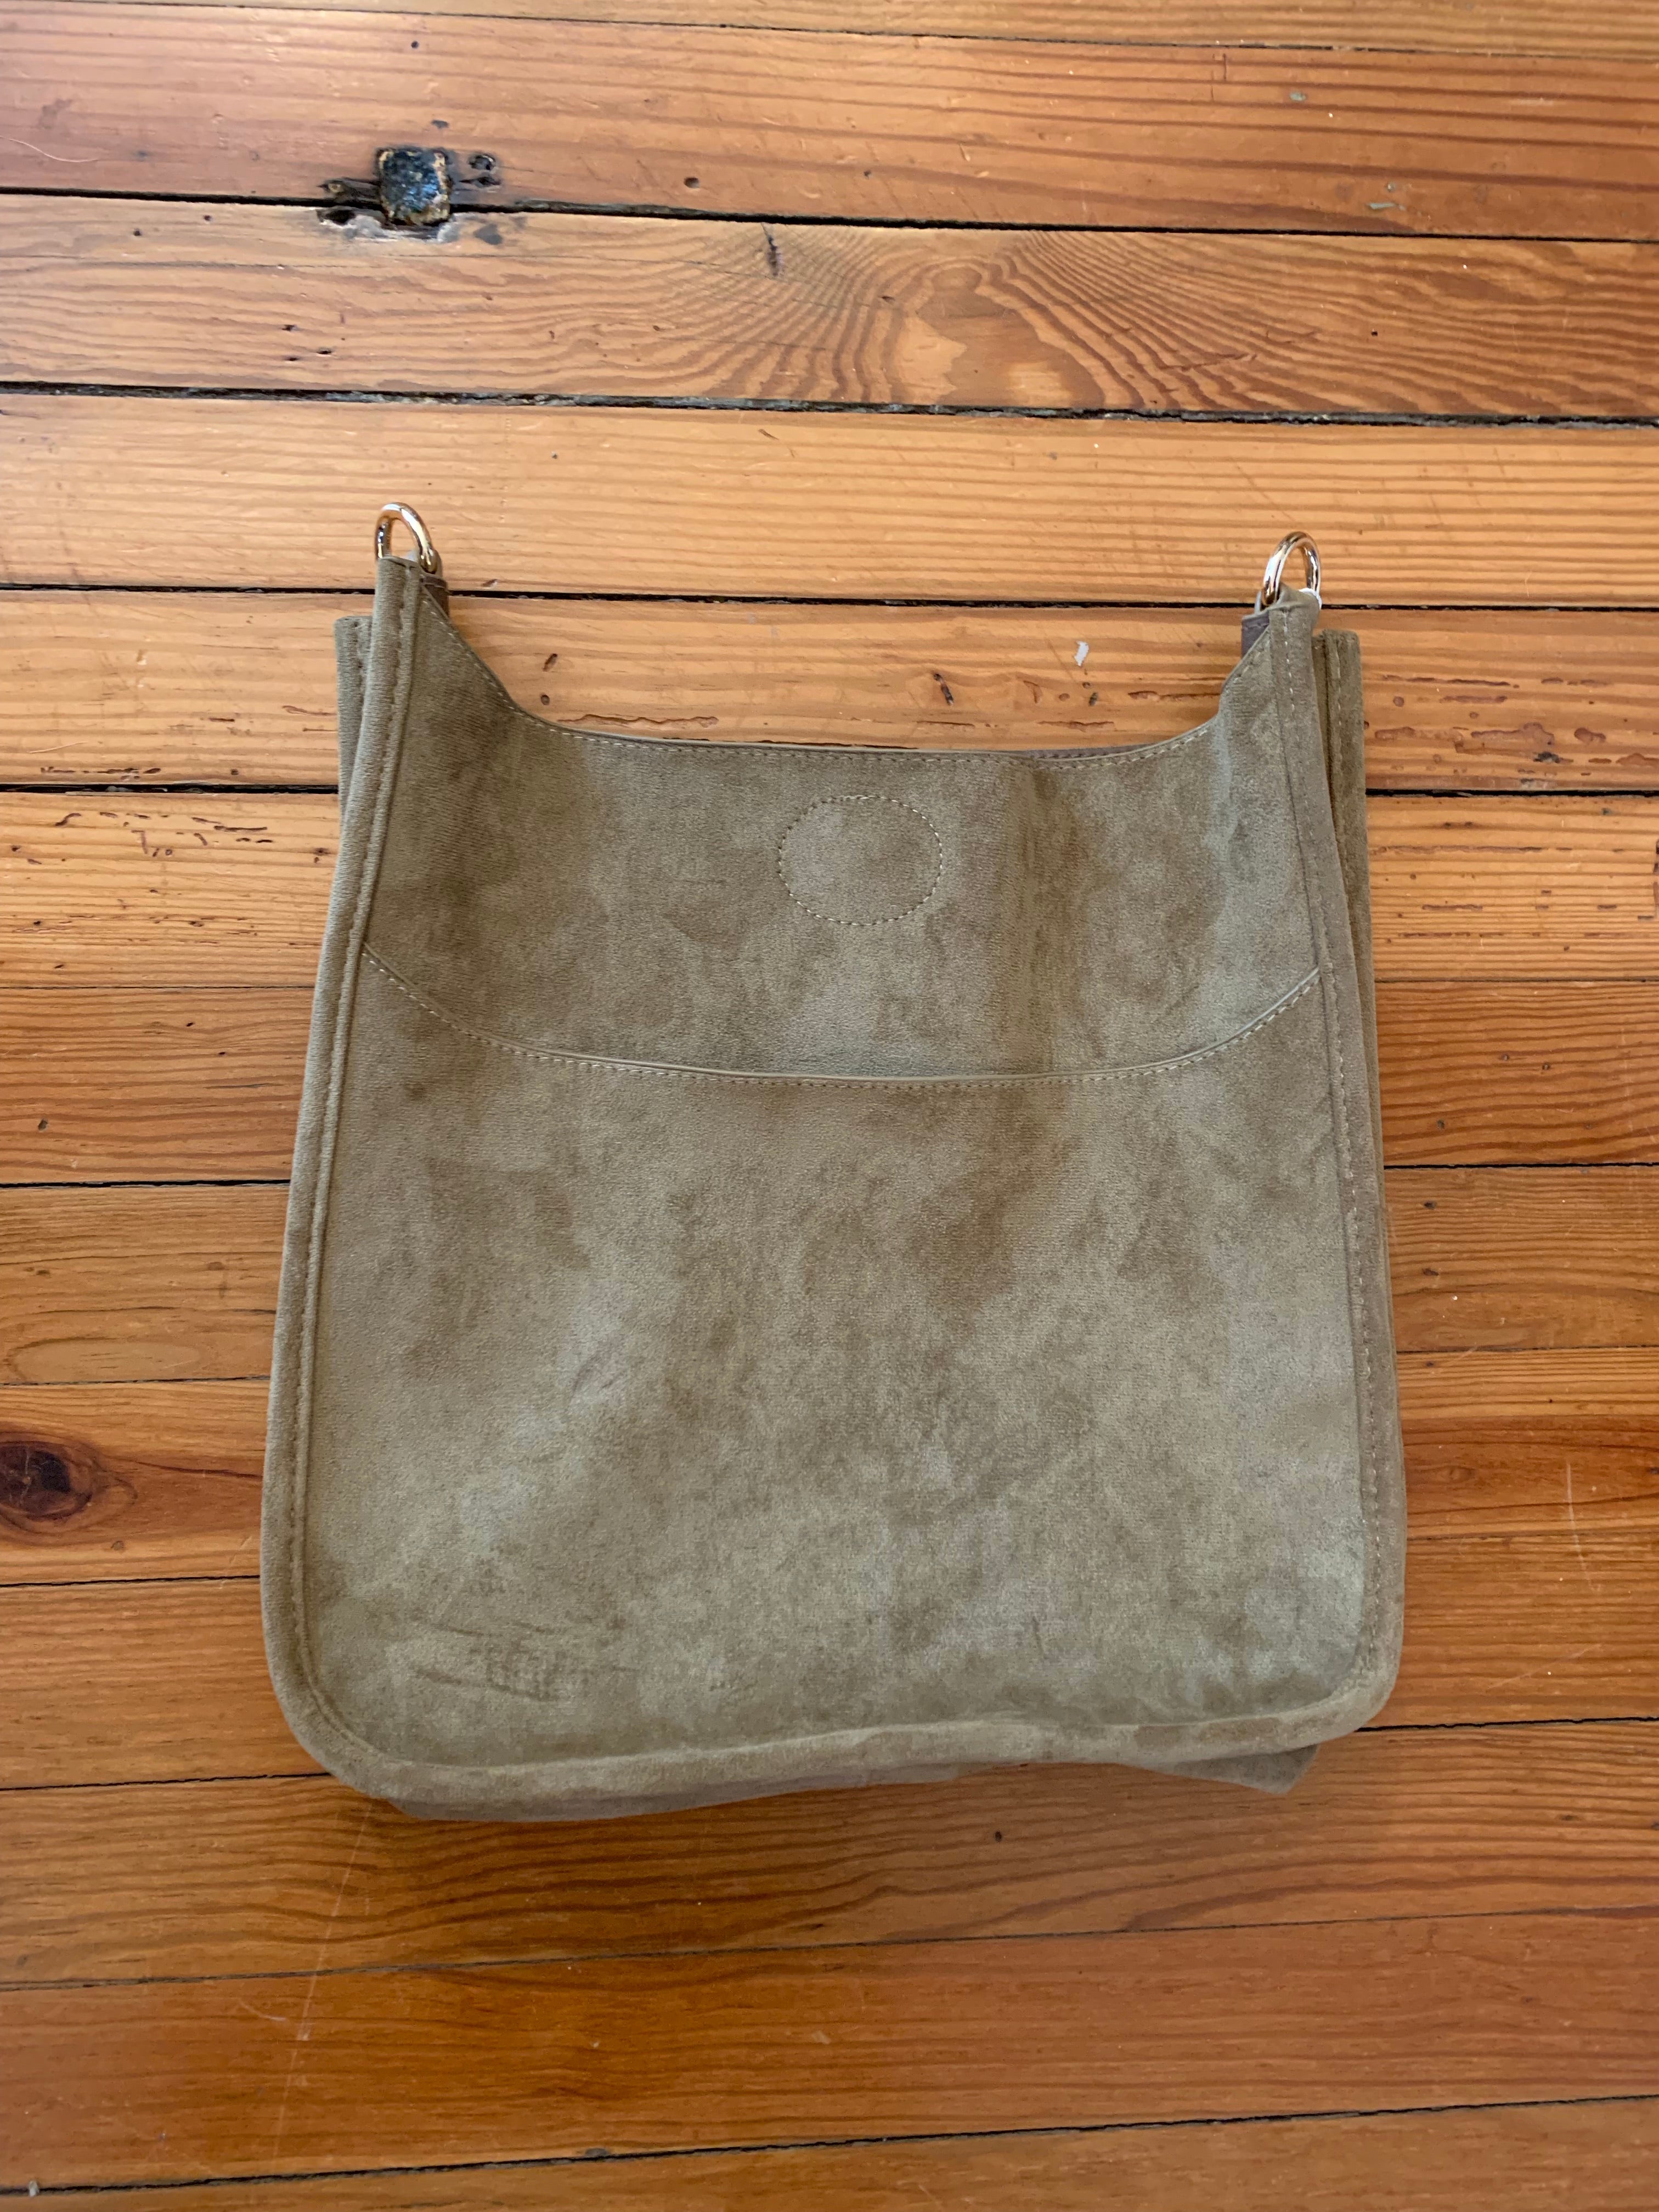 Ahdorned Mini Messenger Bag — Carolee's